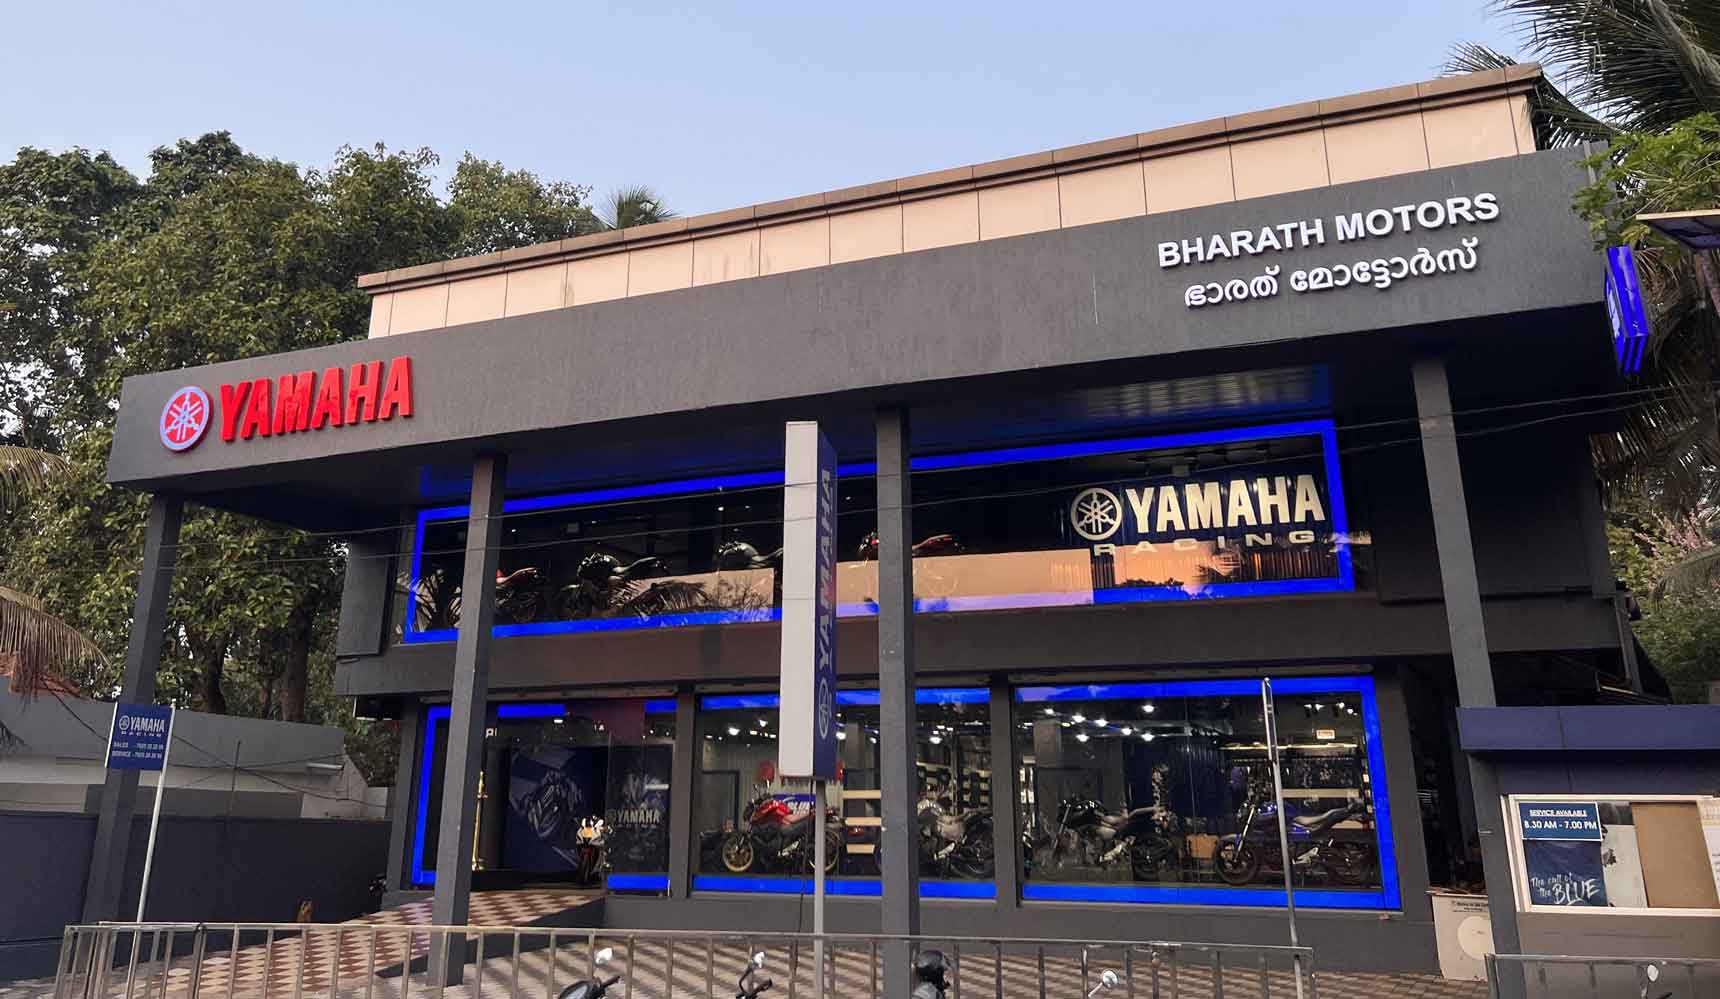 YAMAHA - Bharat Motors